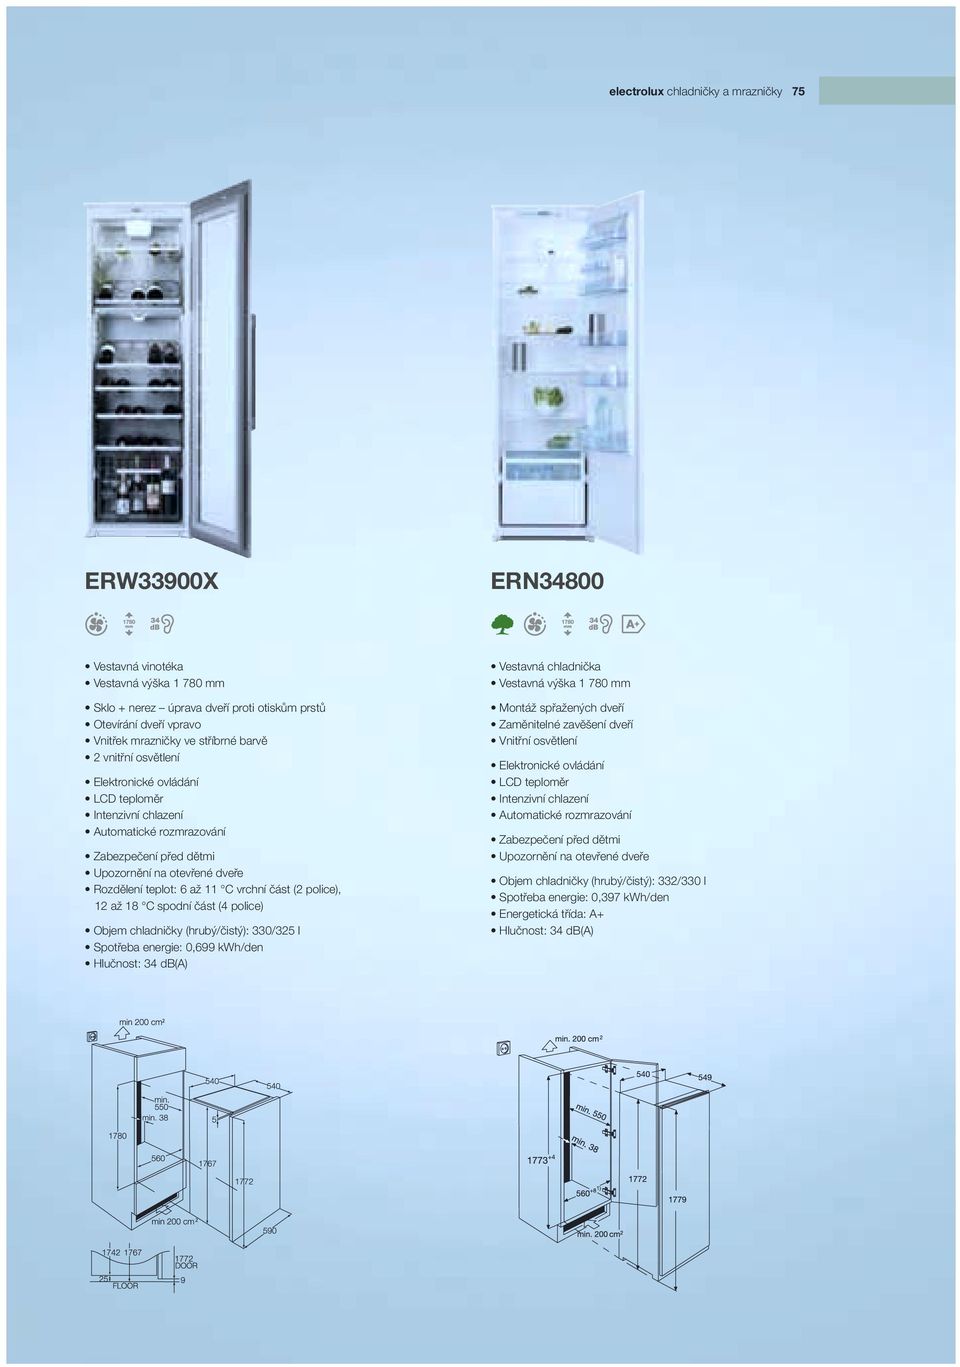 (2 police), 12 až 18 C spodní část (4 police) Objem chladničky (hrubý/čistý): 330/325 l Spotřeba energie: 0,699 kwh/den Hlučnost: 34 db(a) Vestavná chladnička Vestavná výška 1 780 mm Elektronické